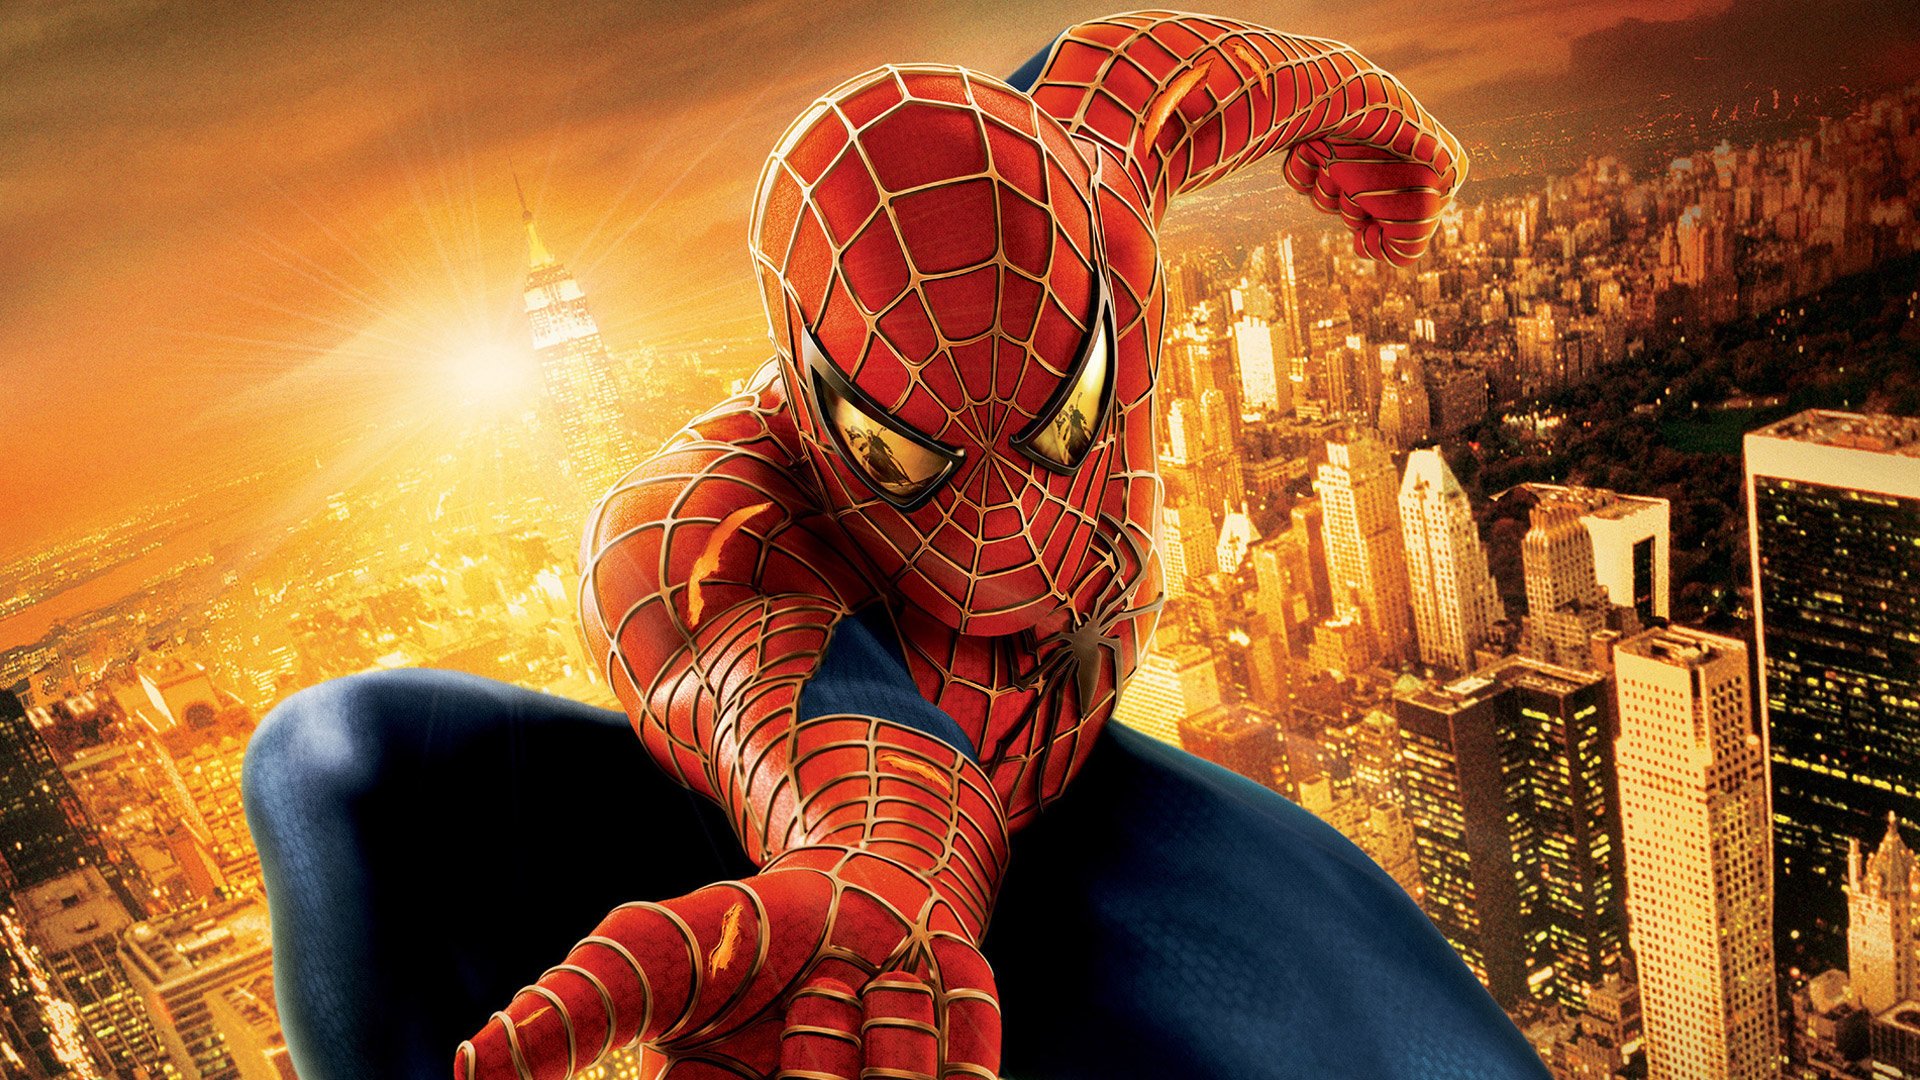 Spider-Man 2 - Películas - Comprar/Alquilar - Rakuten TV